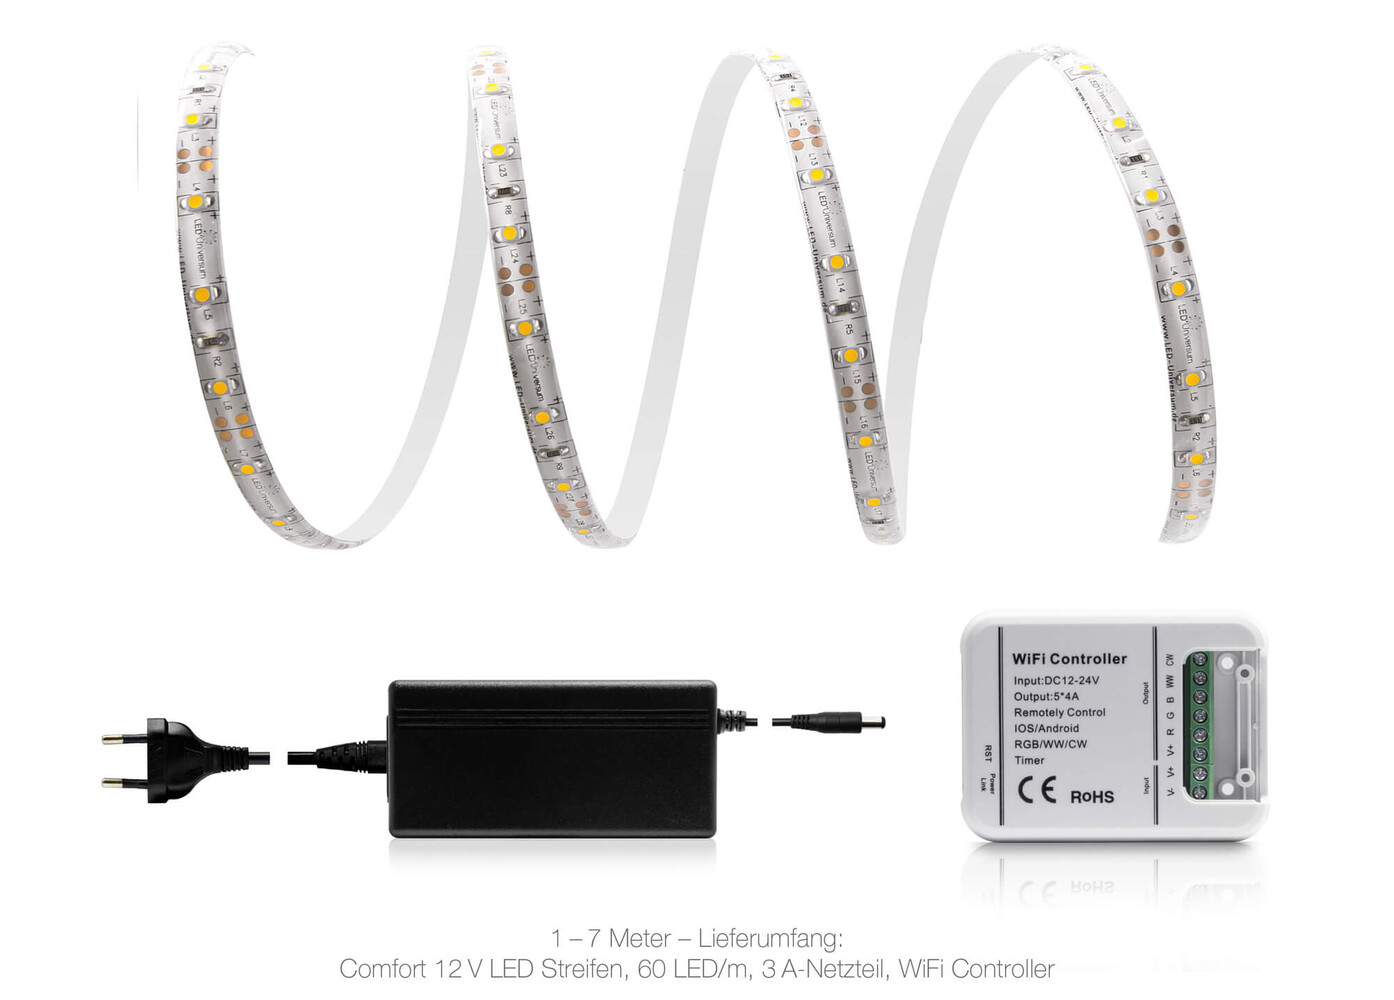 Hochwertiger warmweißer 12V LED Streifen von LED Universum mit integrierter WLAN-Technologie und komfortabler Bedienung